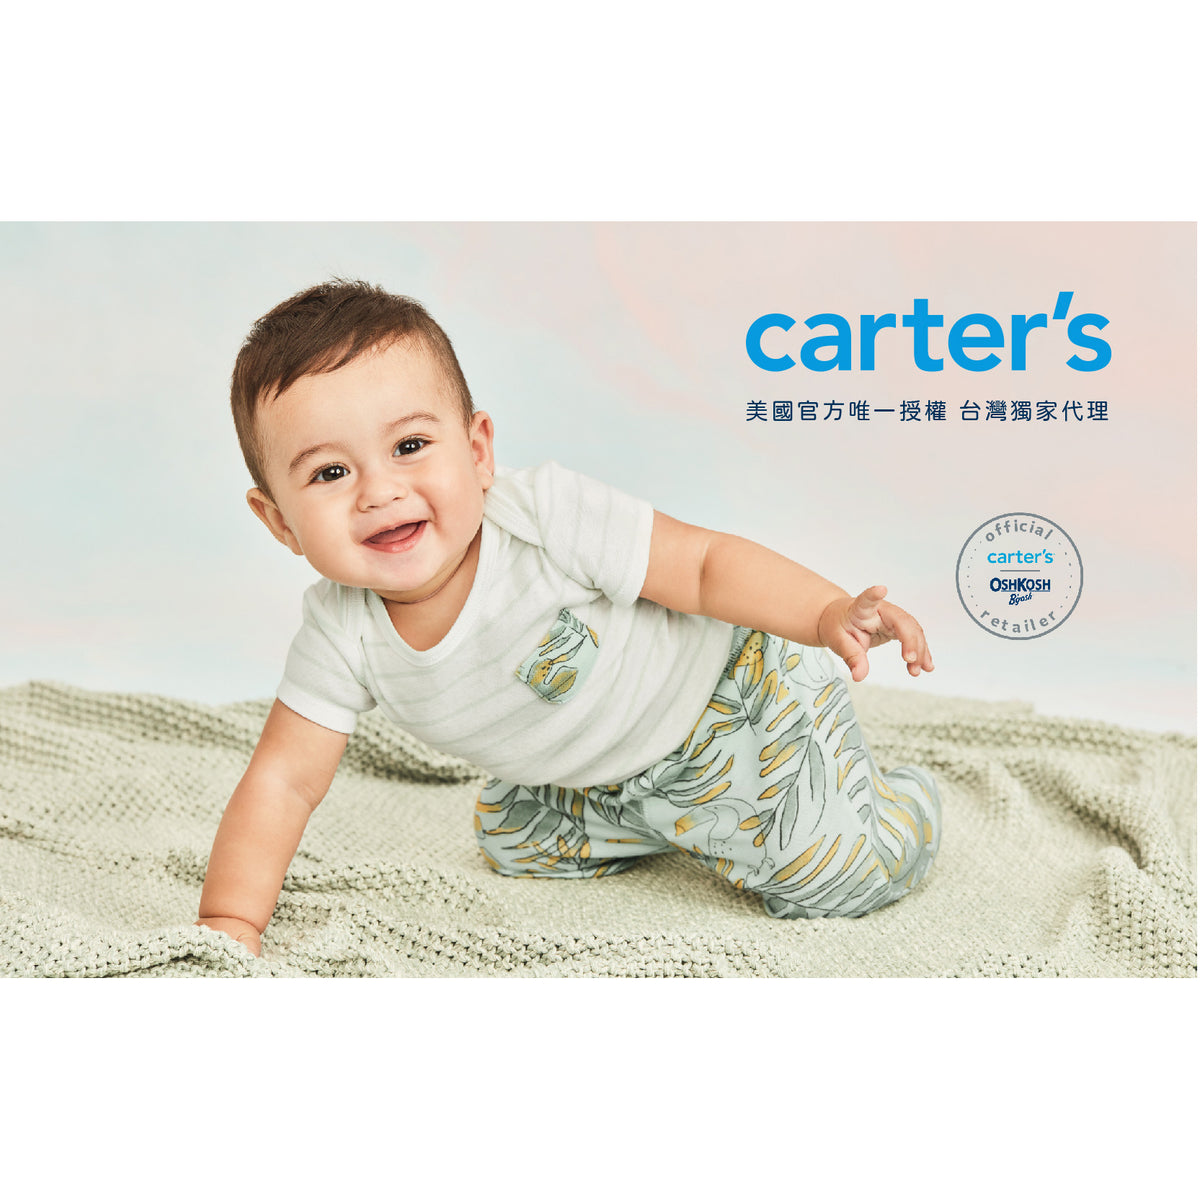 Carter's 藍黃撞色背心(6M-24M)